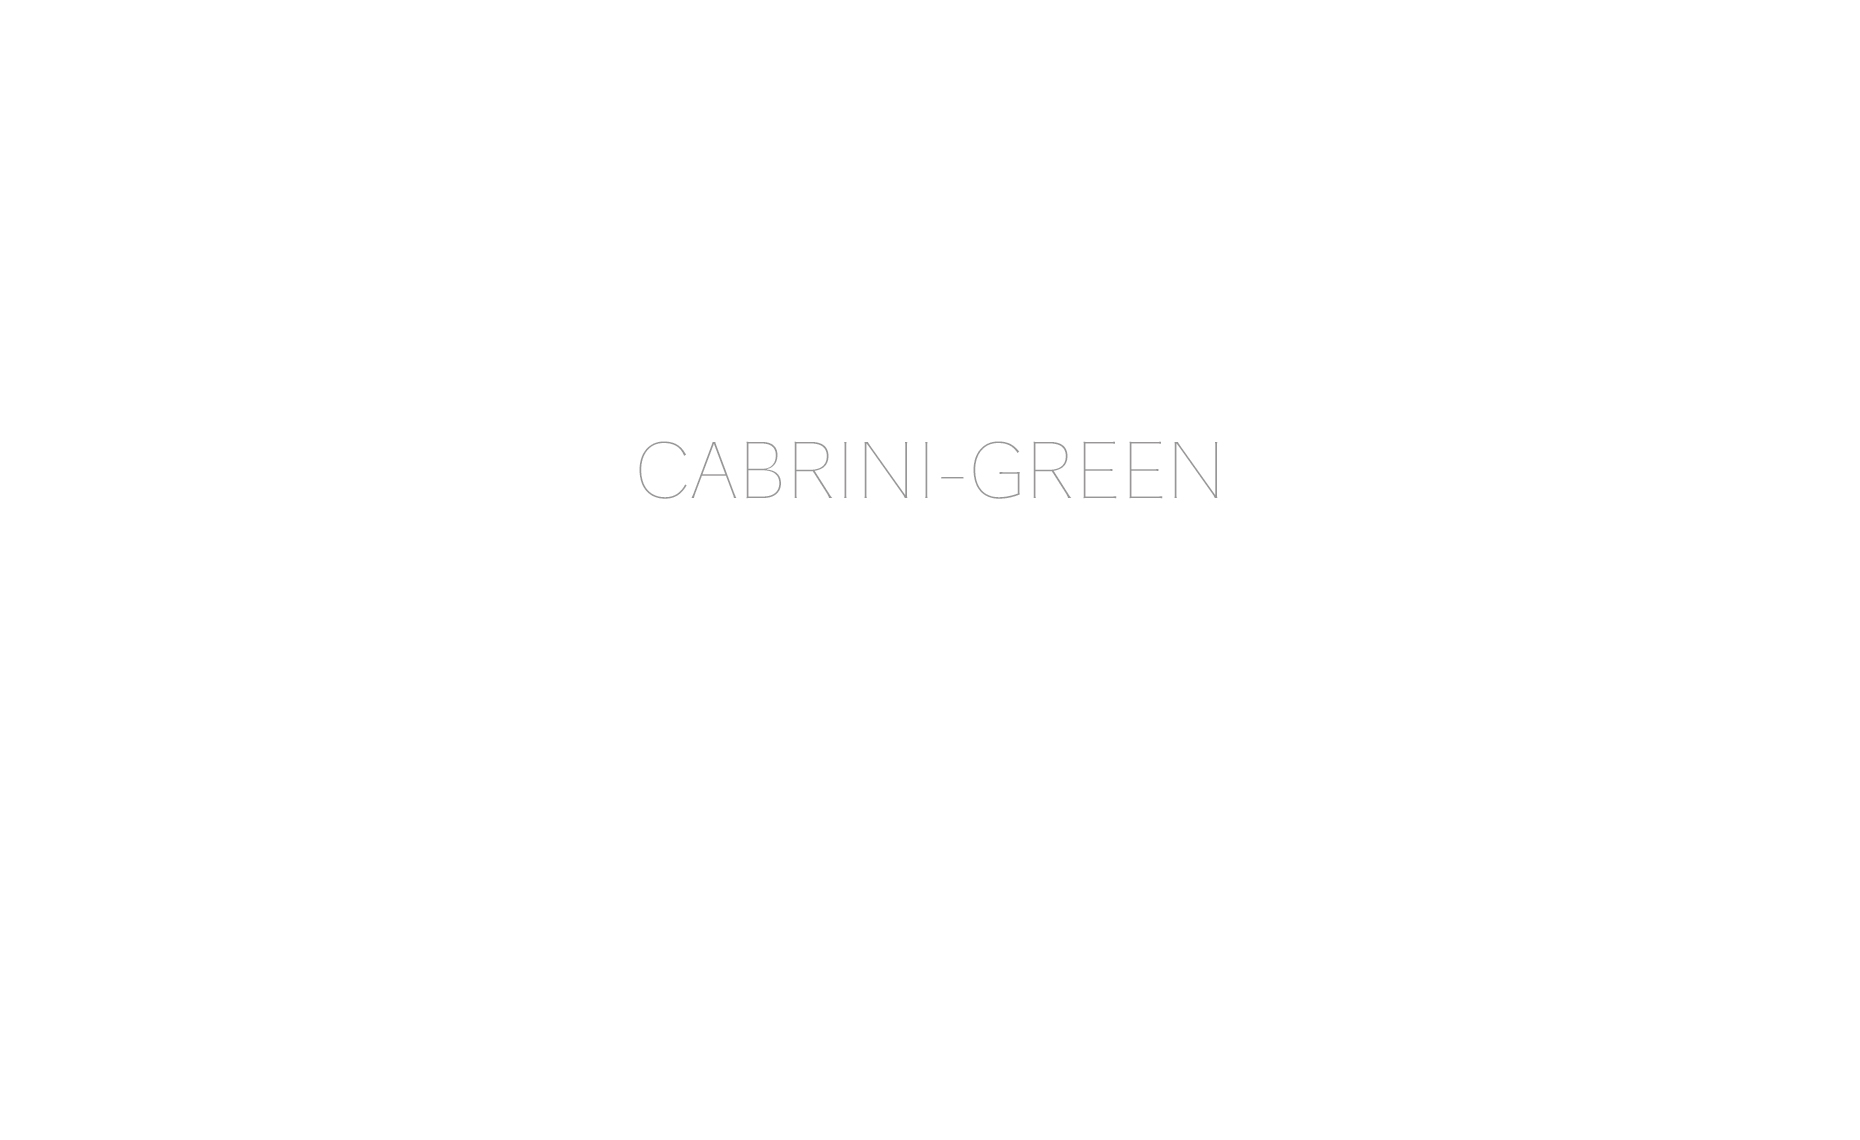 CABRINI-GREEN